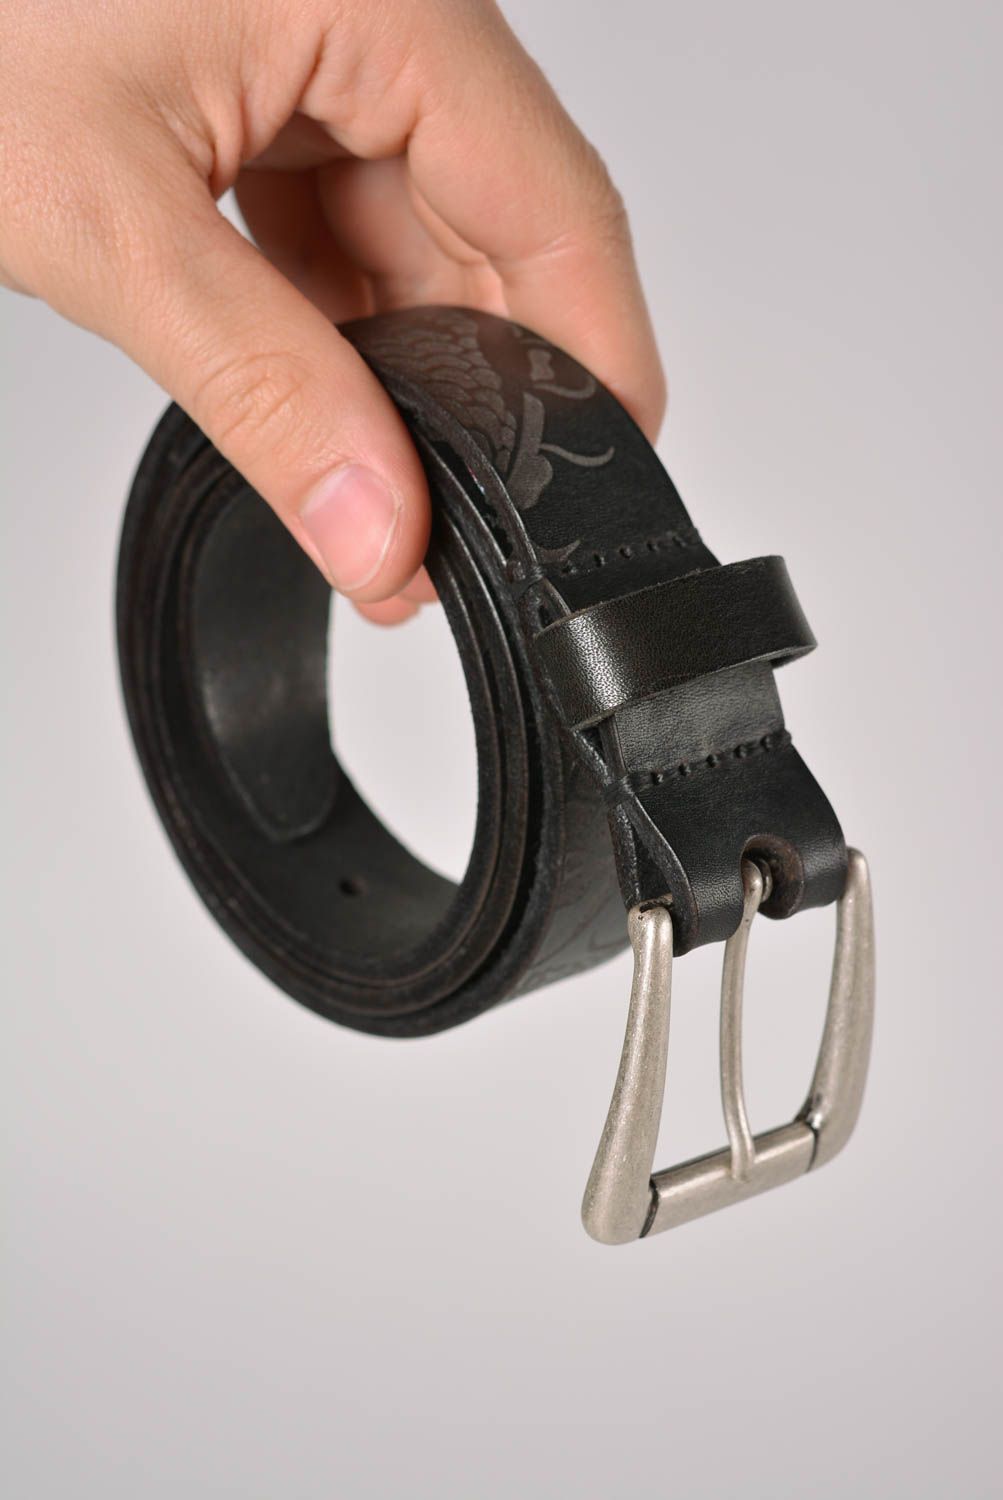 Cinturón de cuero hecho a mano ropa masculina estilosa accesorio de moda bonito foto 3